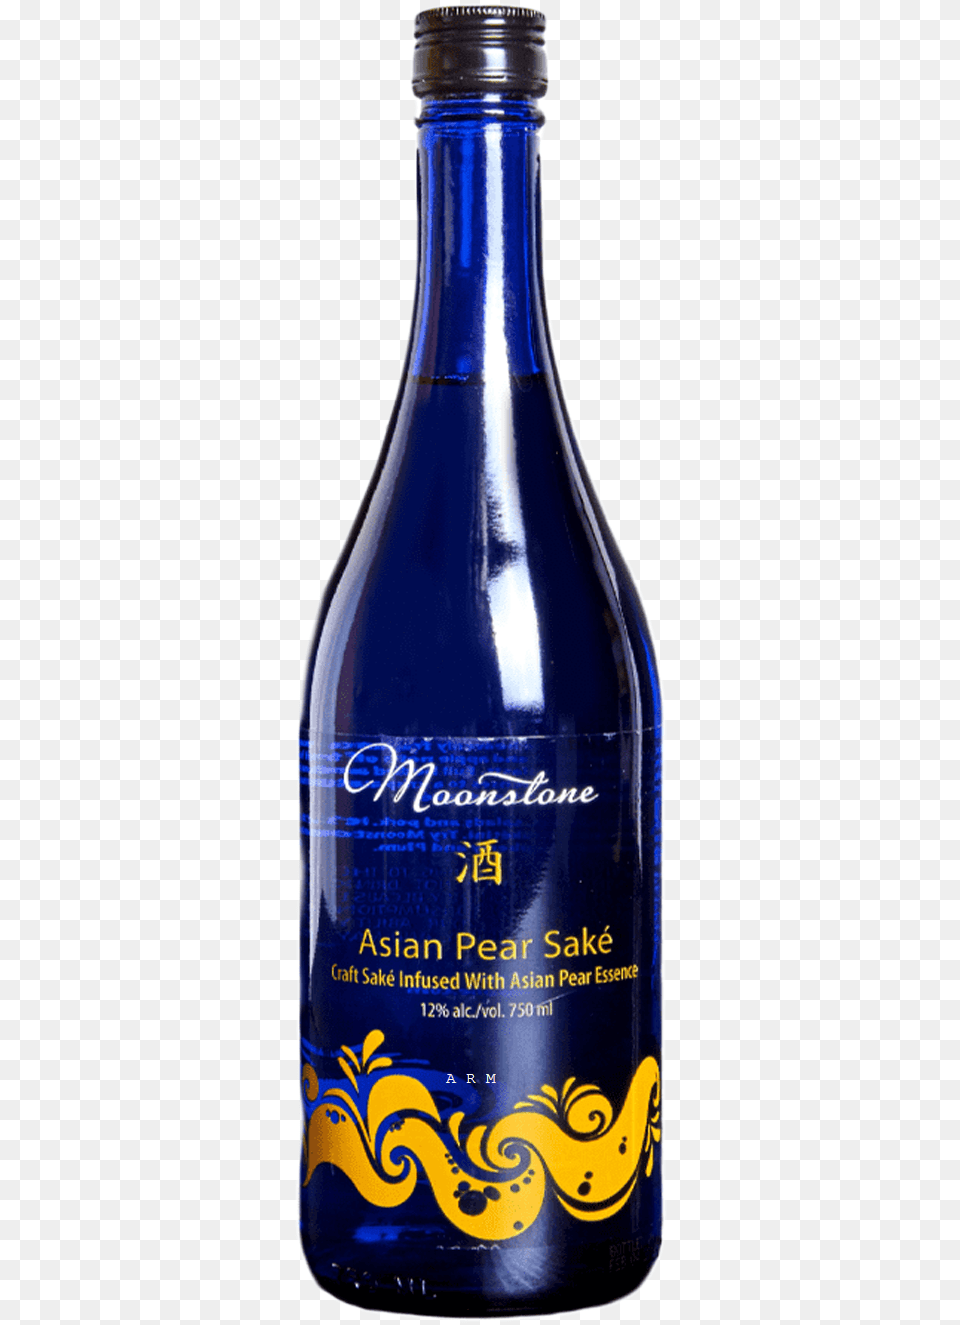 Asian Pear Sake, Alcohol, Beer, Beverage, Bottle Png